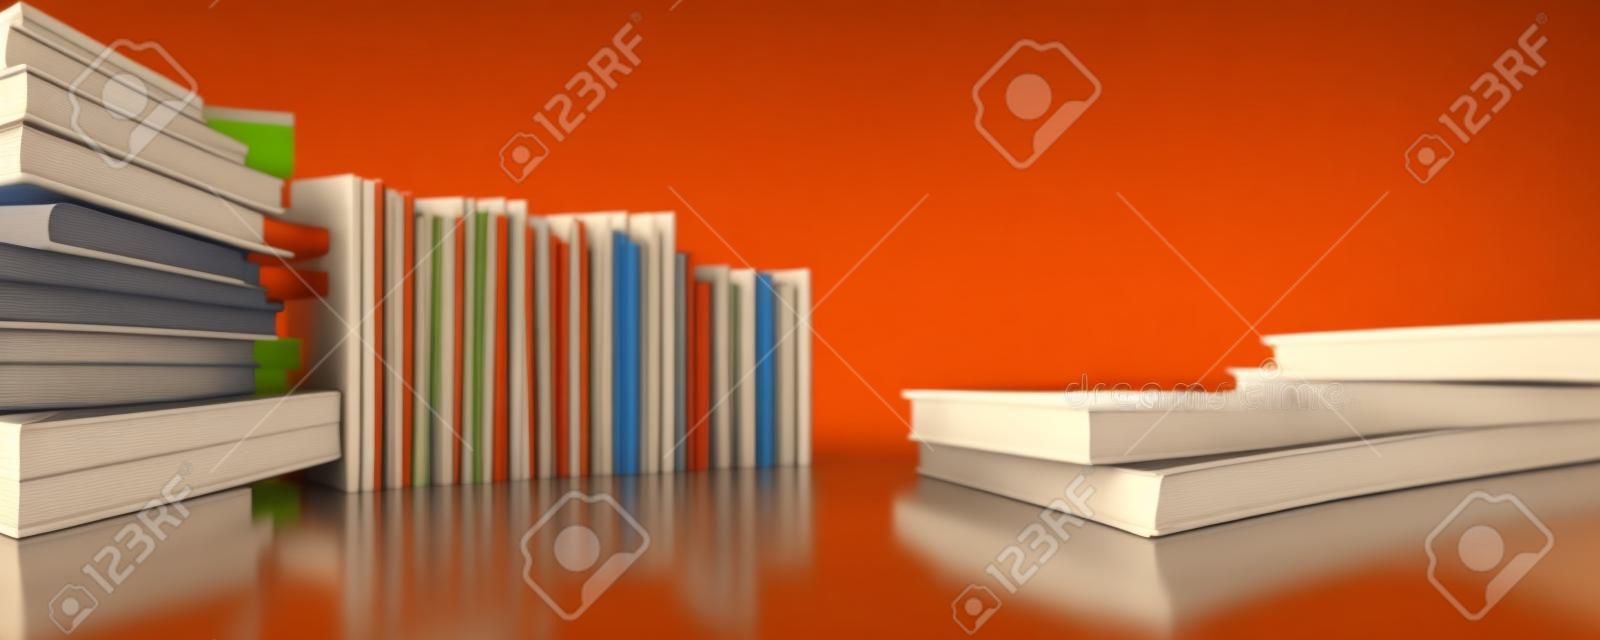 Grupa książek. koncepcja edukacji, nauki i czytania. powrót do szkoły. ilustracja 3D